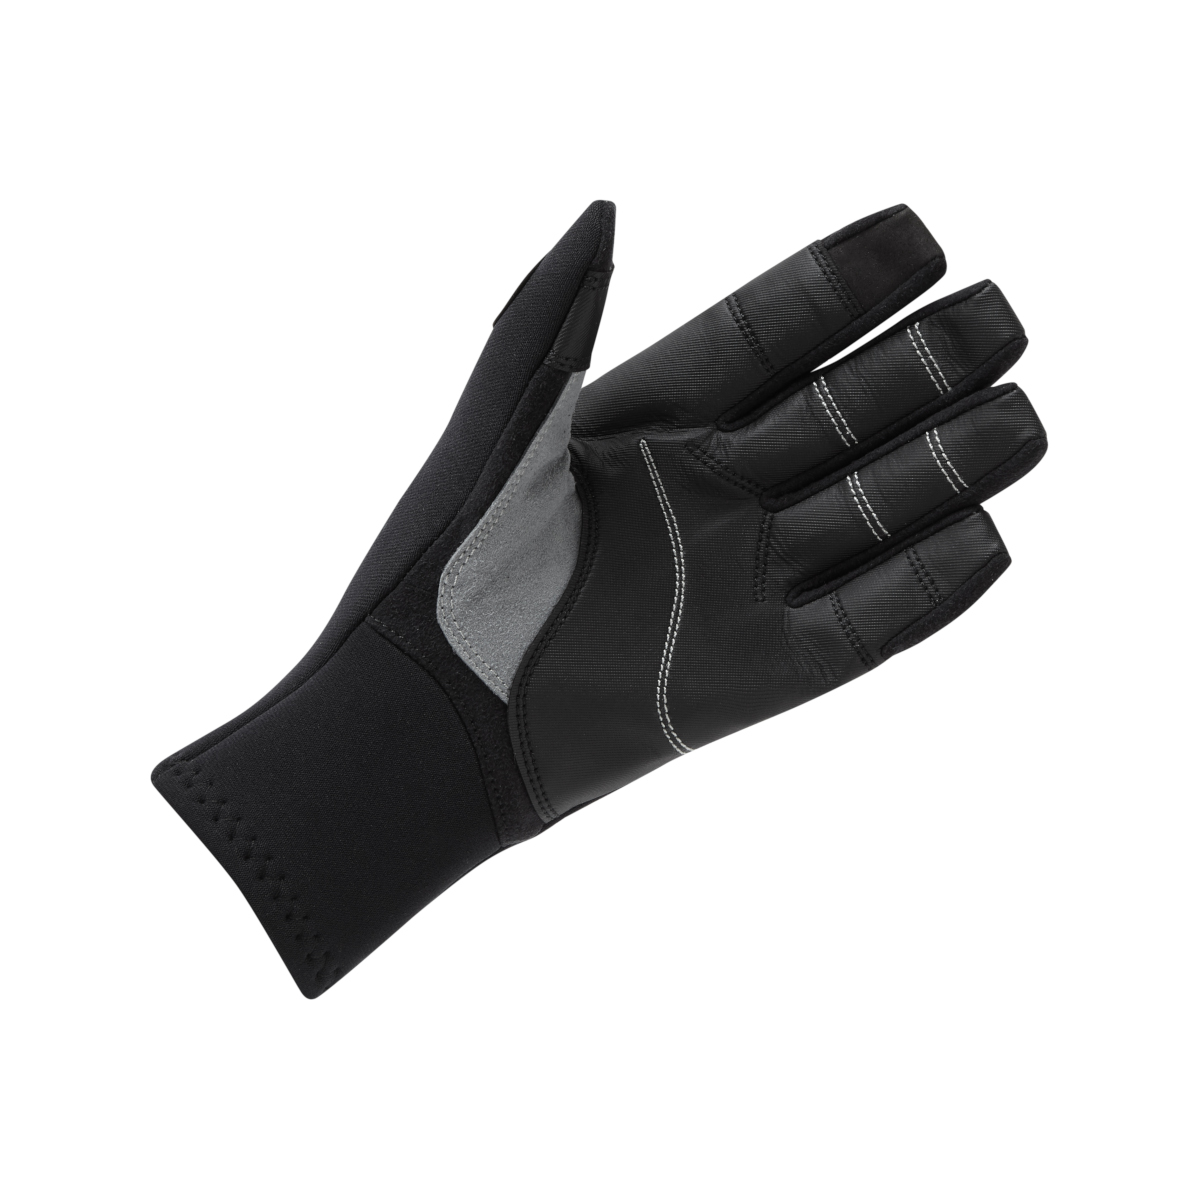 Gill gants de voile à doigts longs, 3 saisons - noir, taille XXL